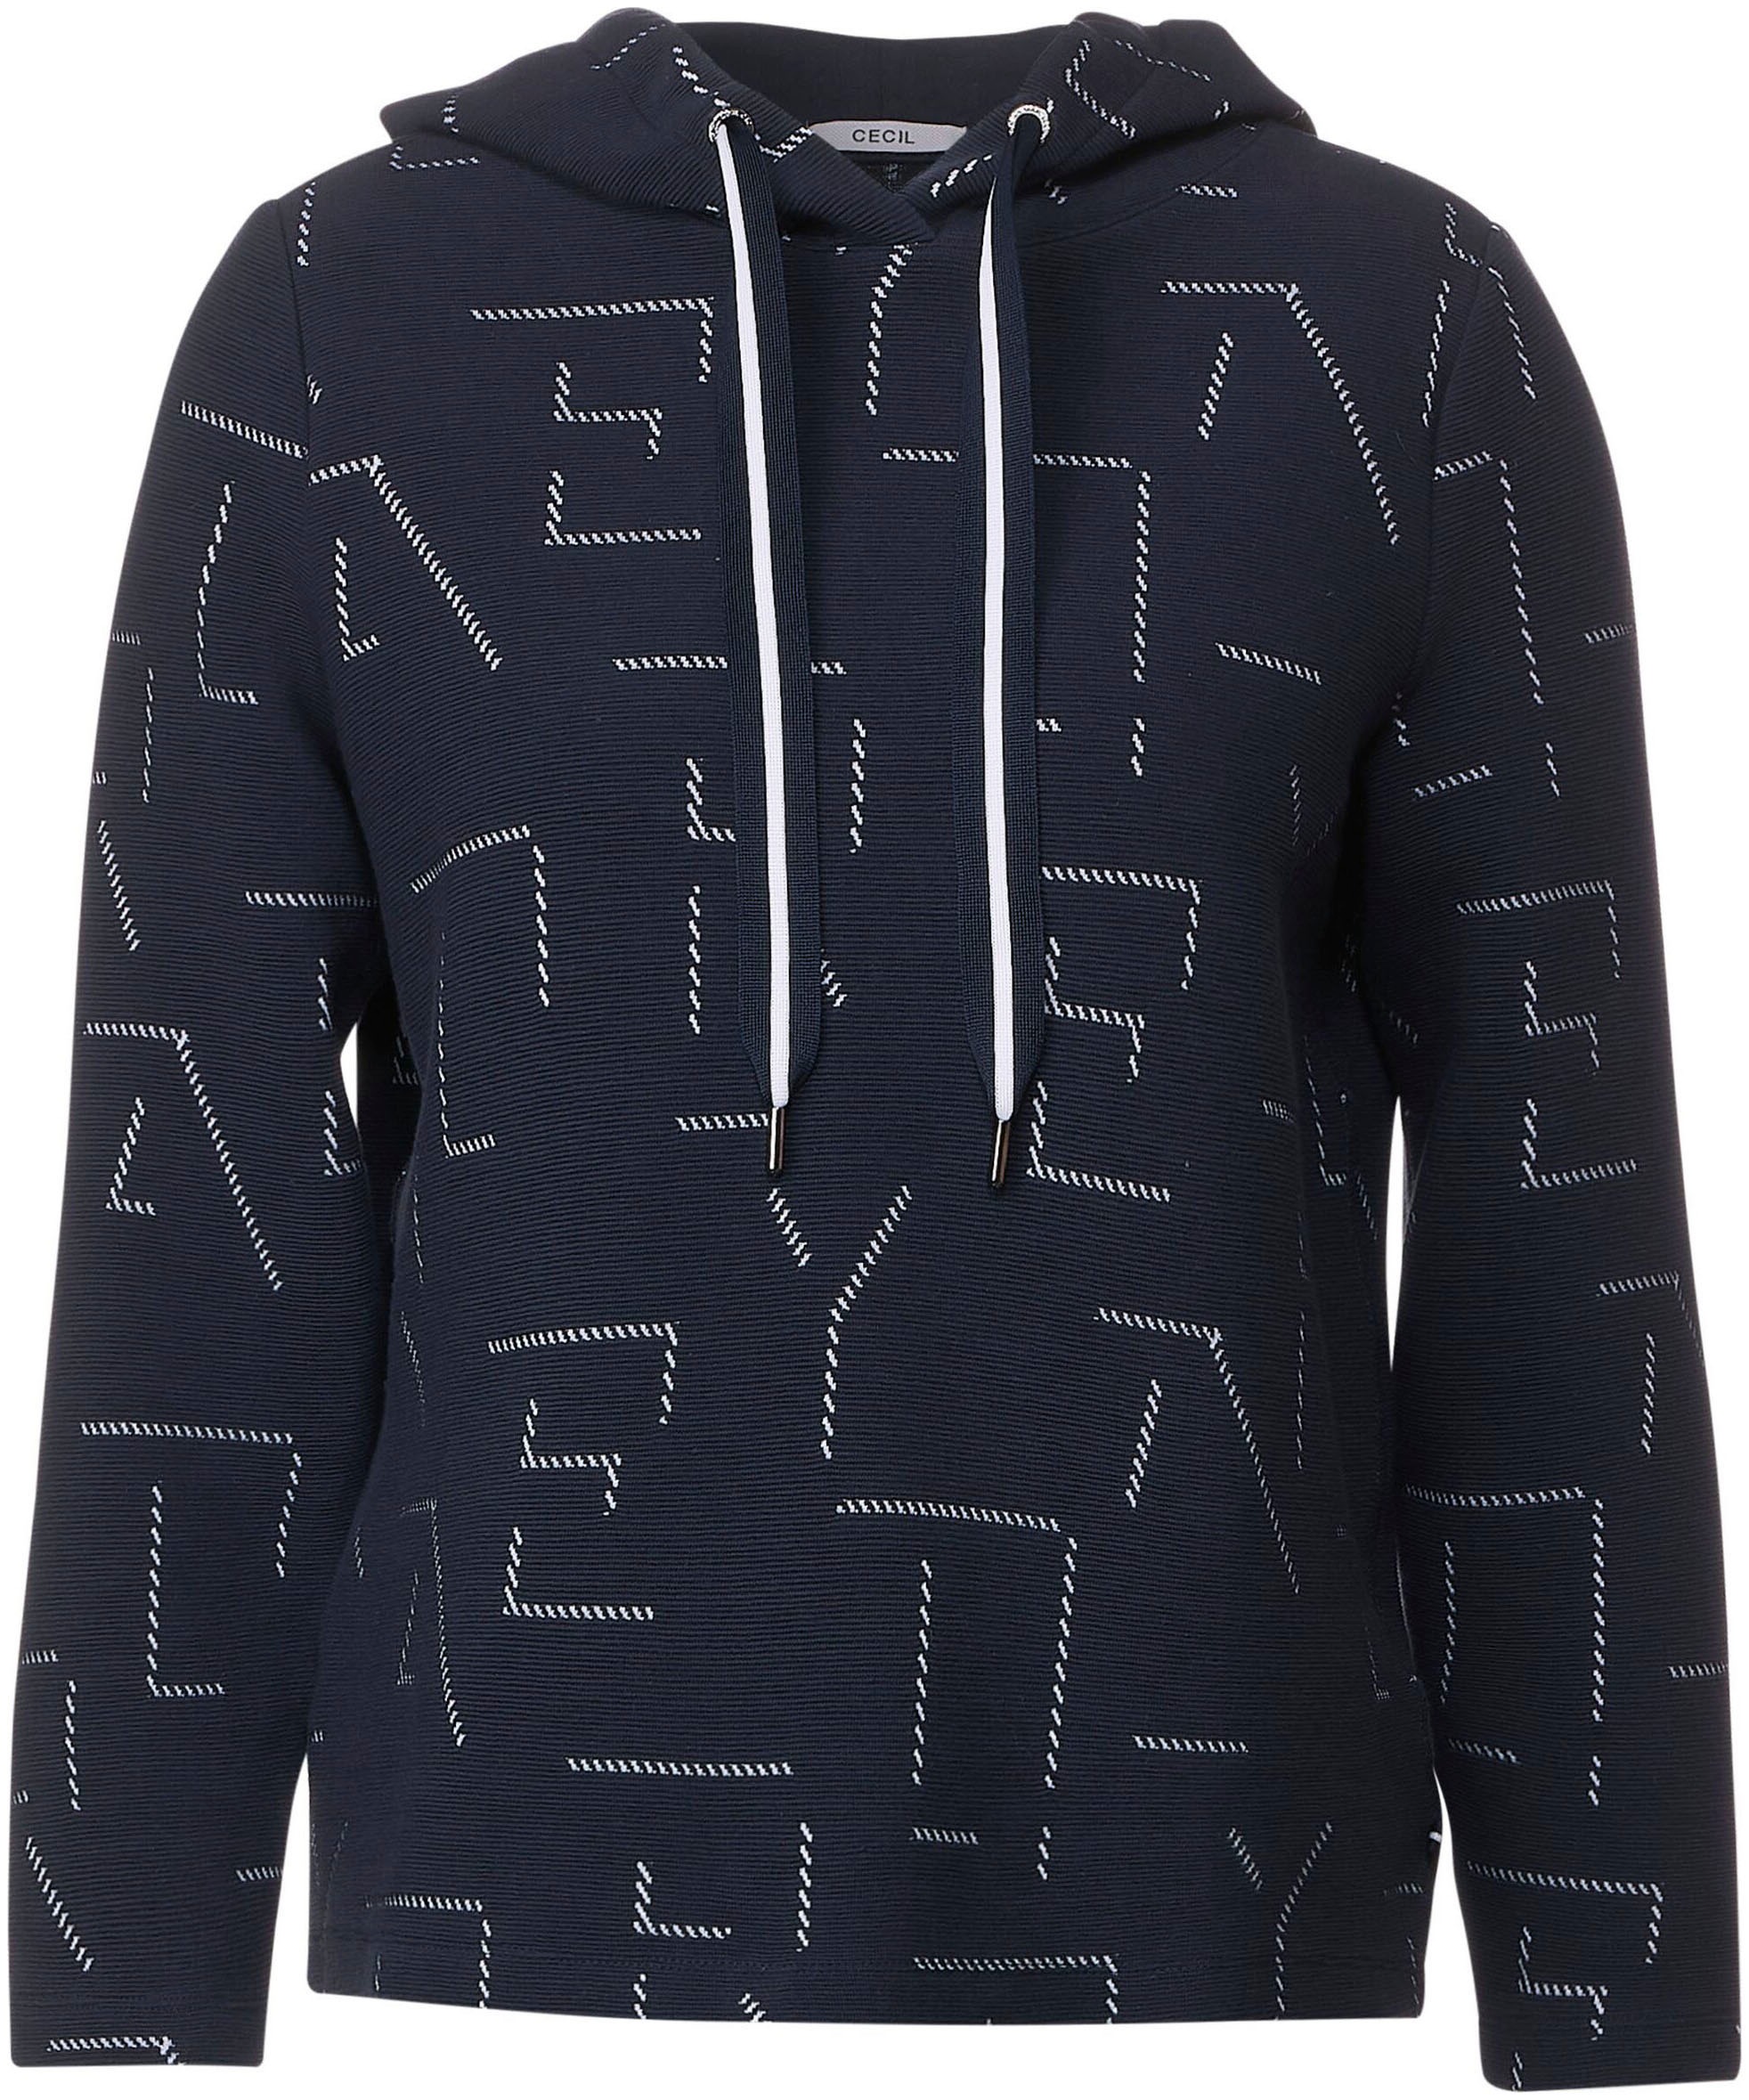 Cecil Sweatshirt, Jacquard-Muster mit einzigartigem kaufen